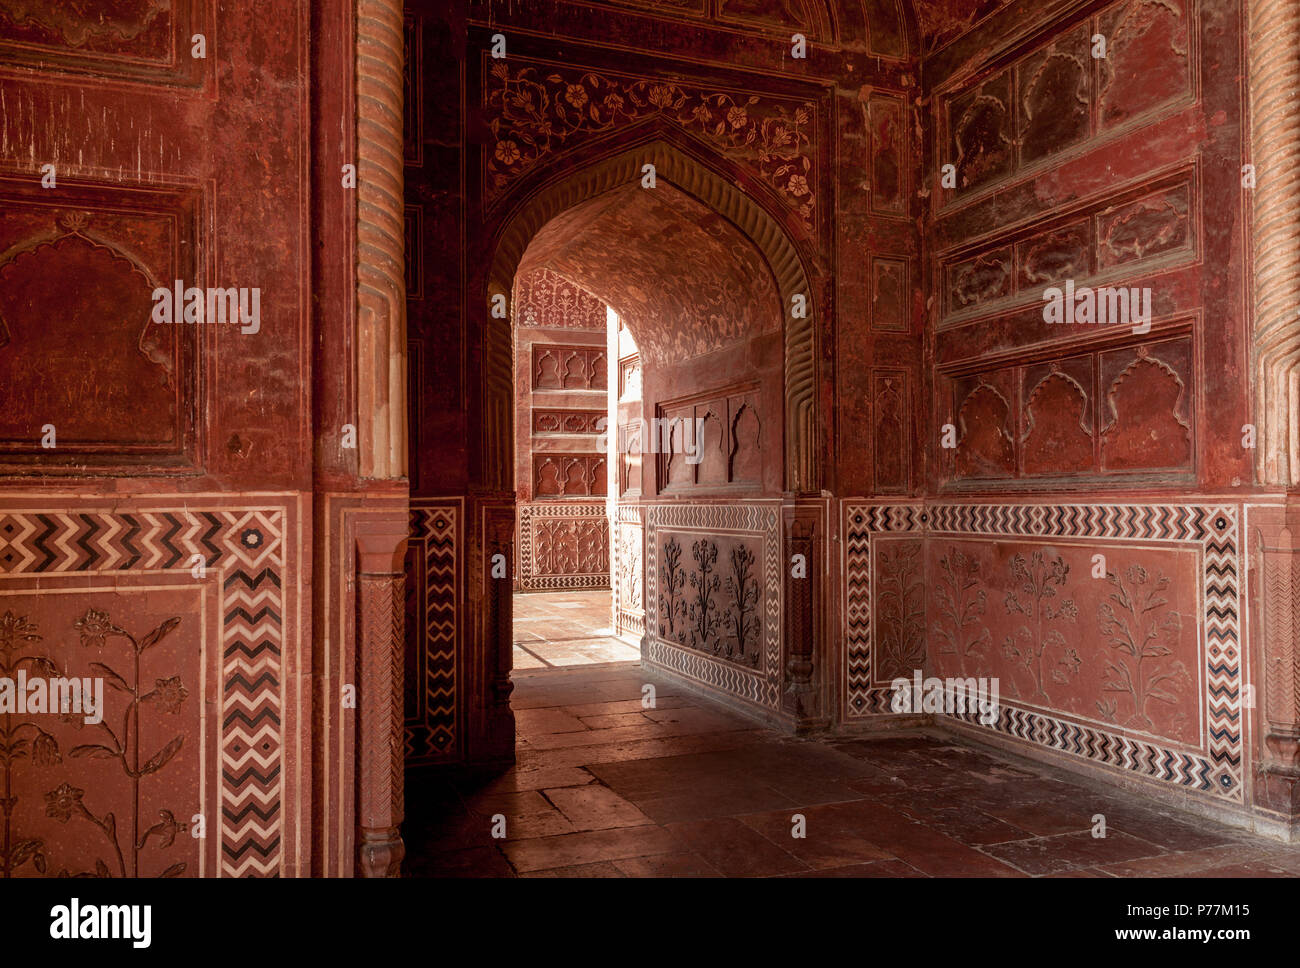 Dans le couloir ocre Mihman Khana, Taj Mahal, Agra, Inde Banque D'Images